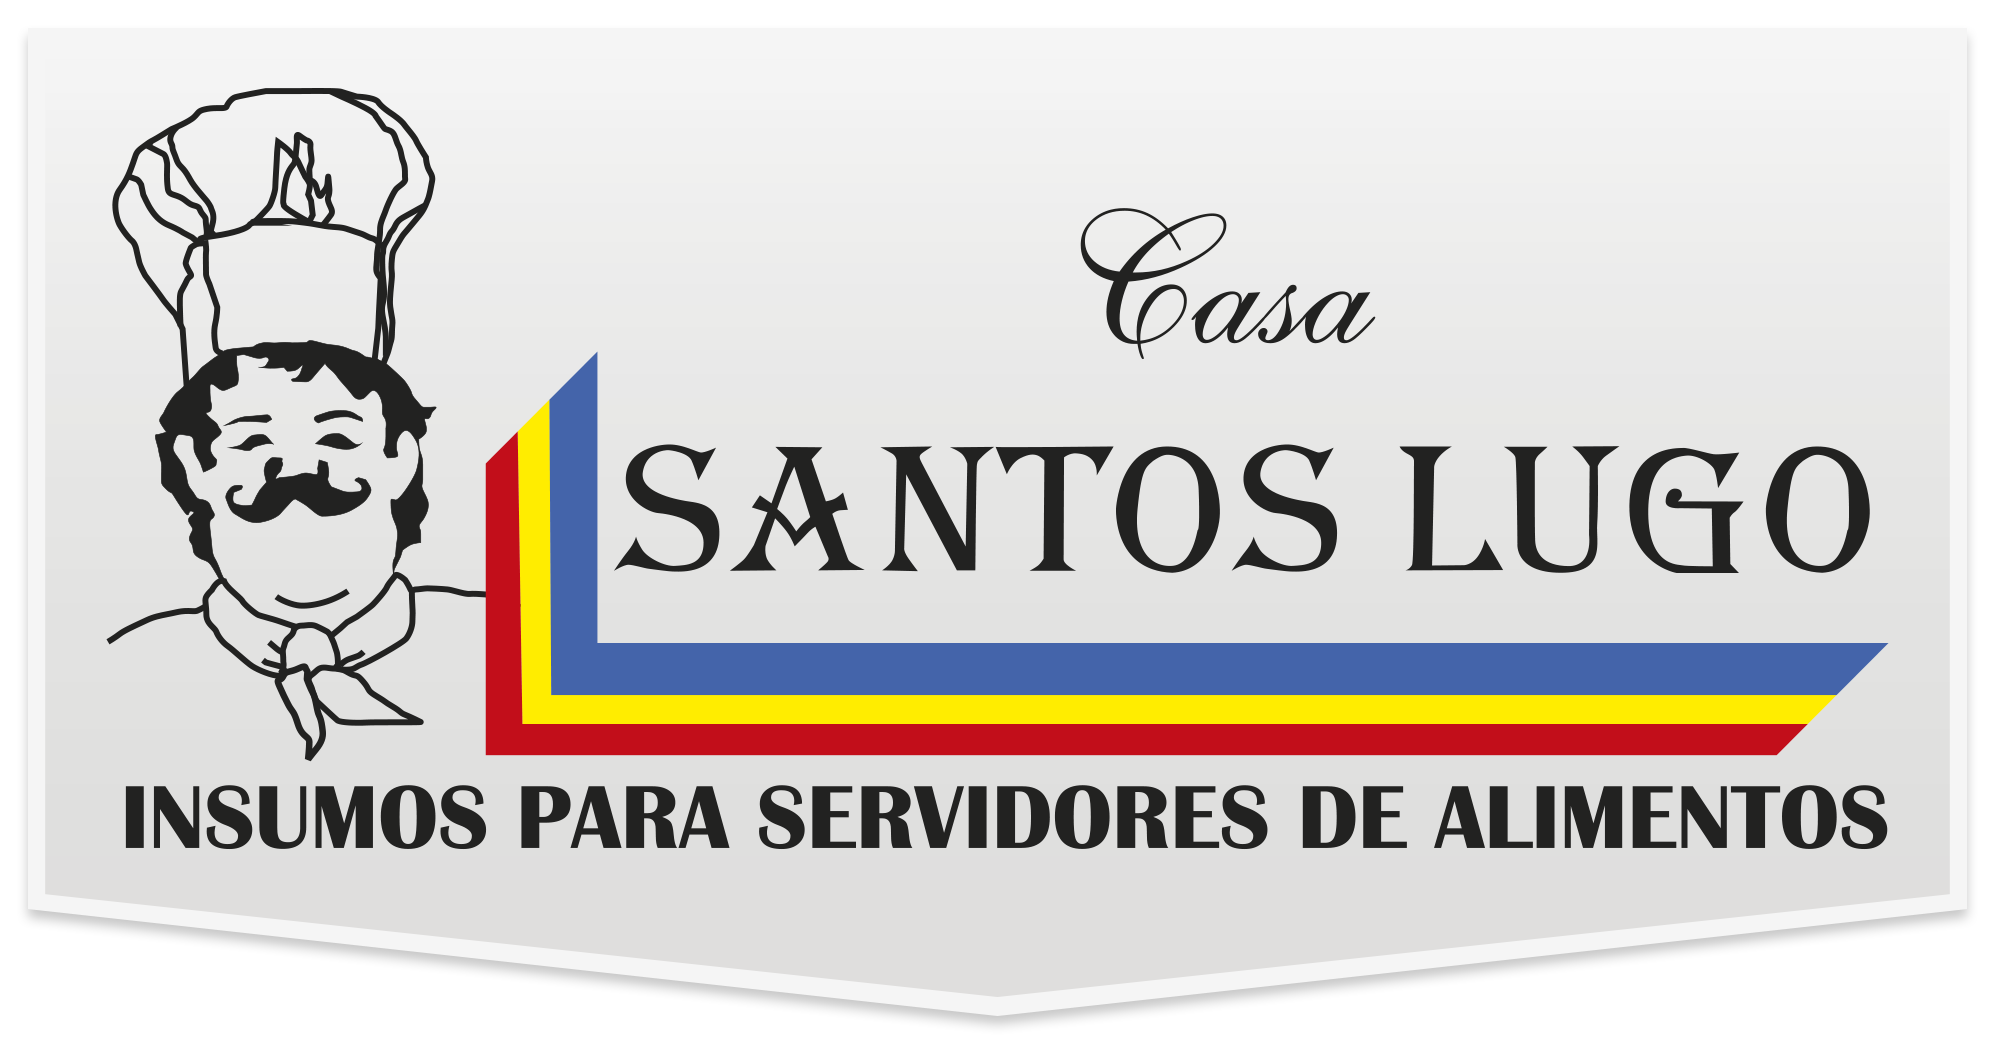 Santos Lugo | Categoría Congelados